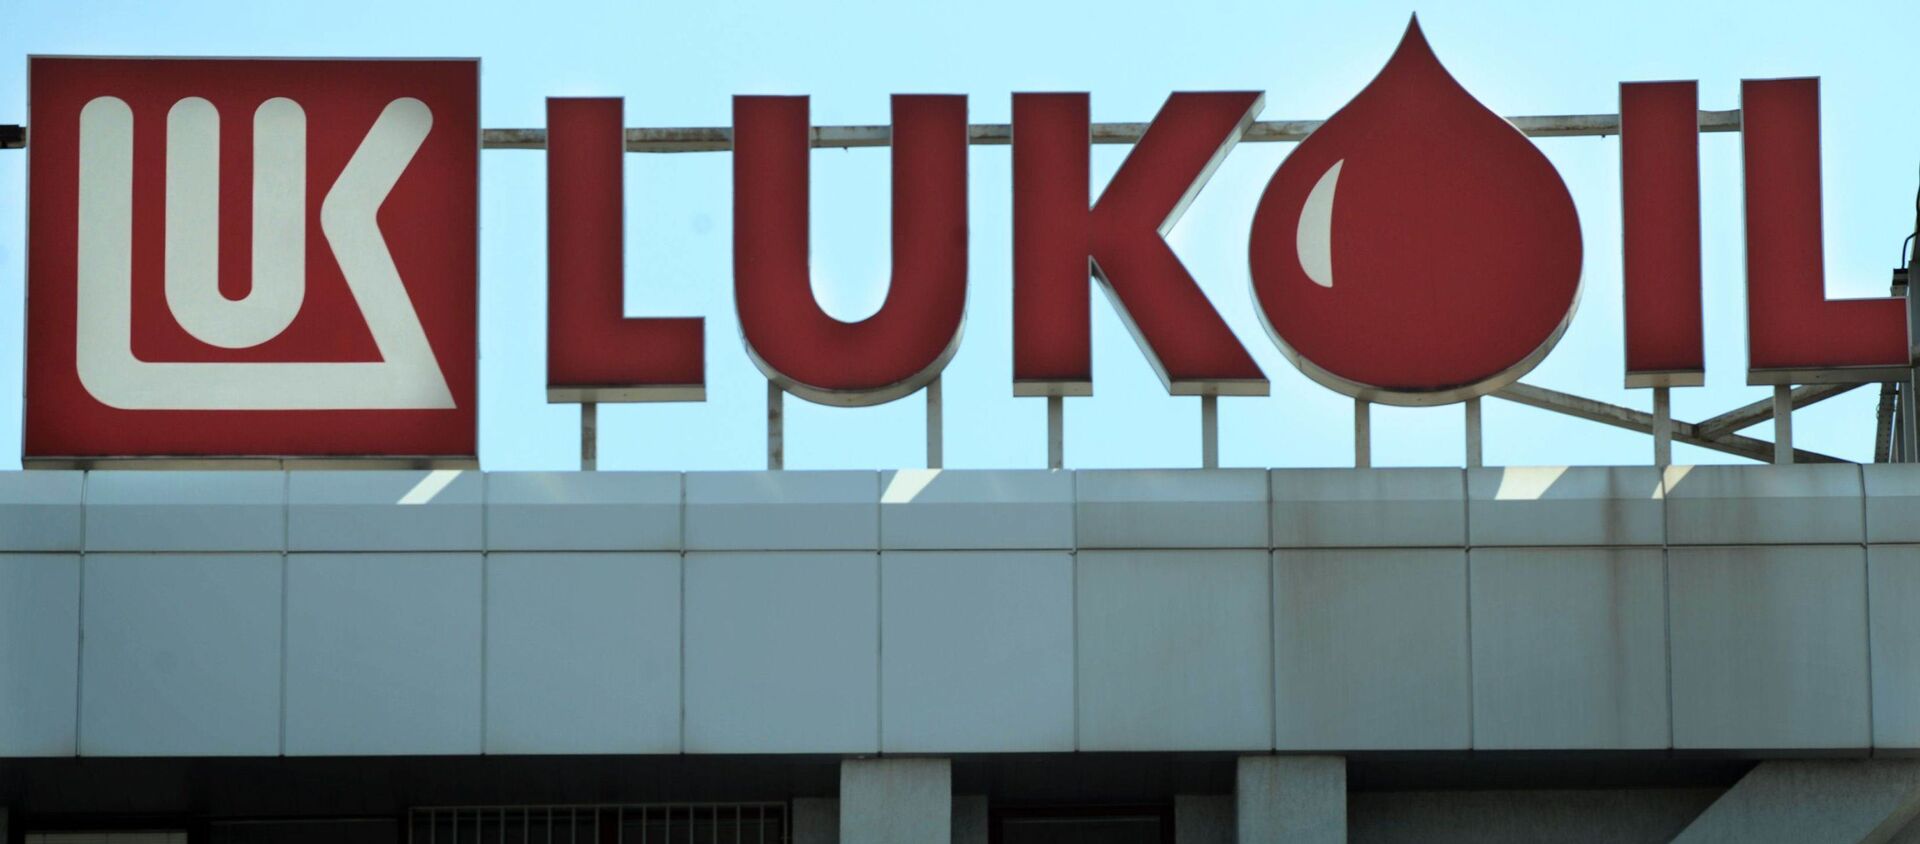 Le siège social de Lukoil à Sofia, Bulgarie. - Sputnik Afrique, 1920, 16.01.2020